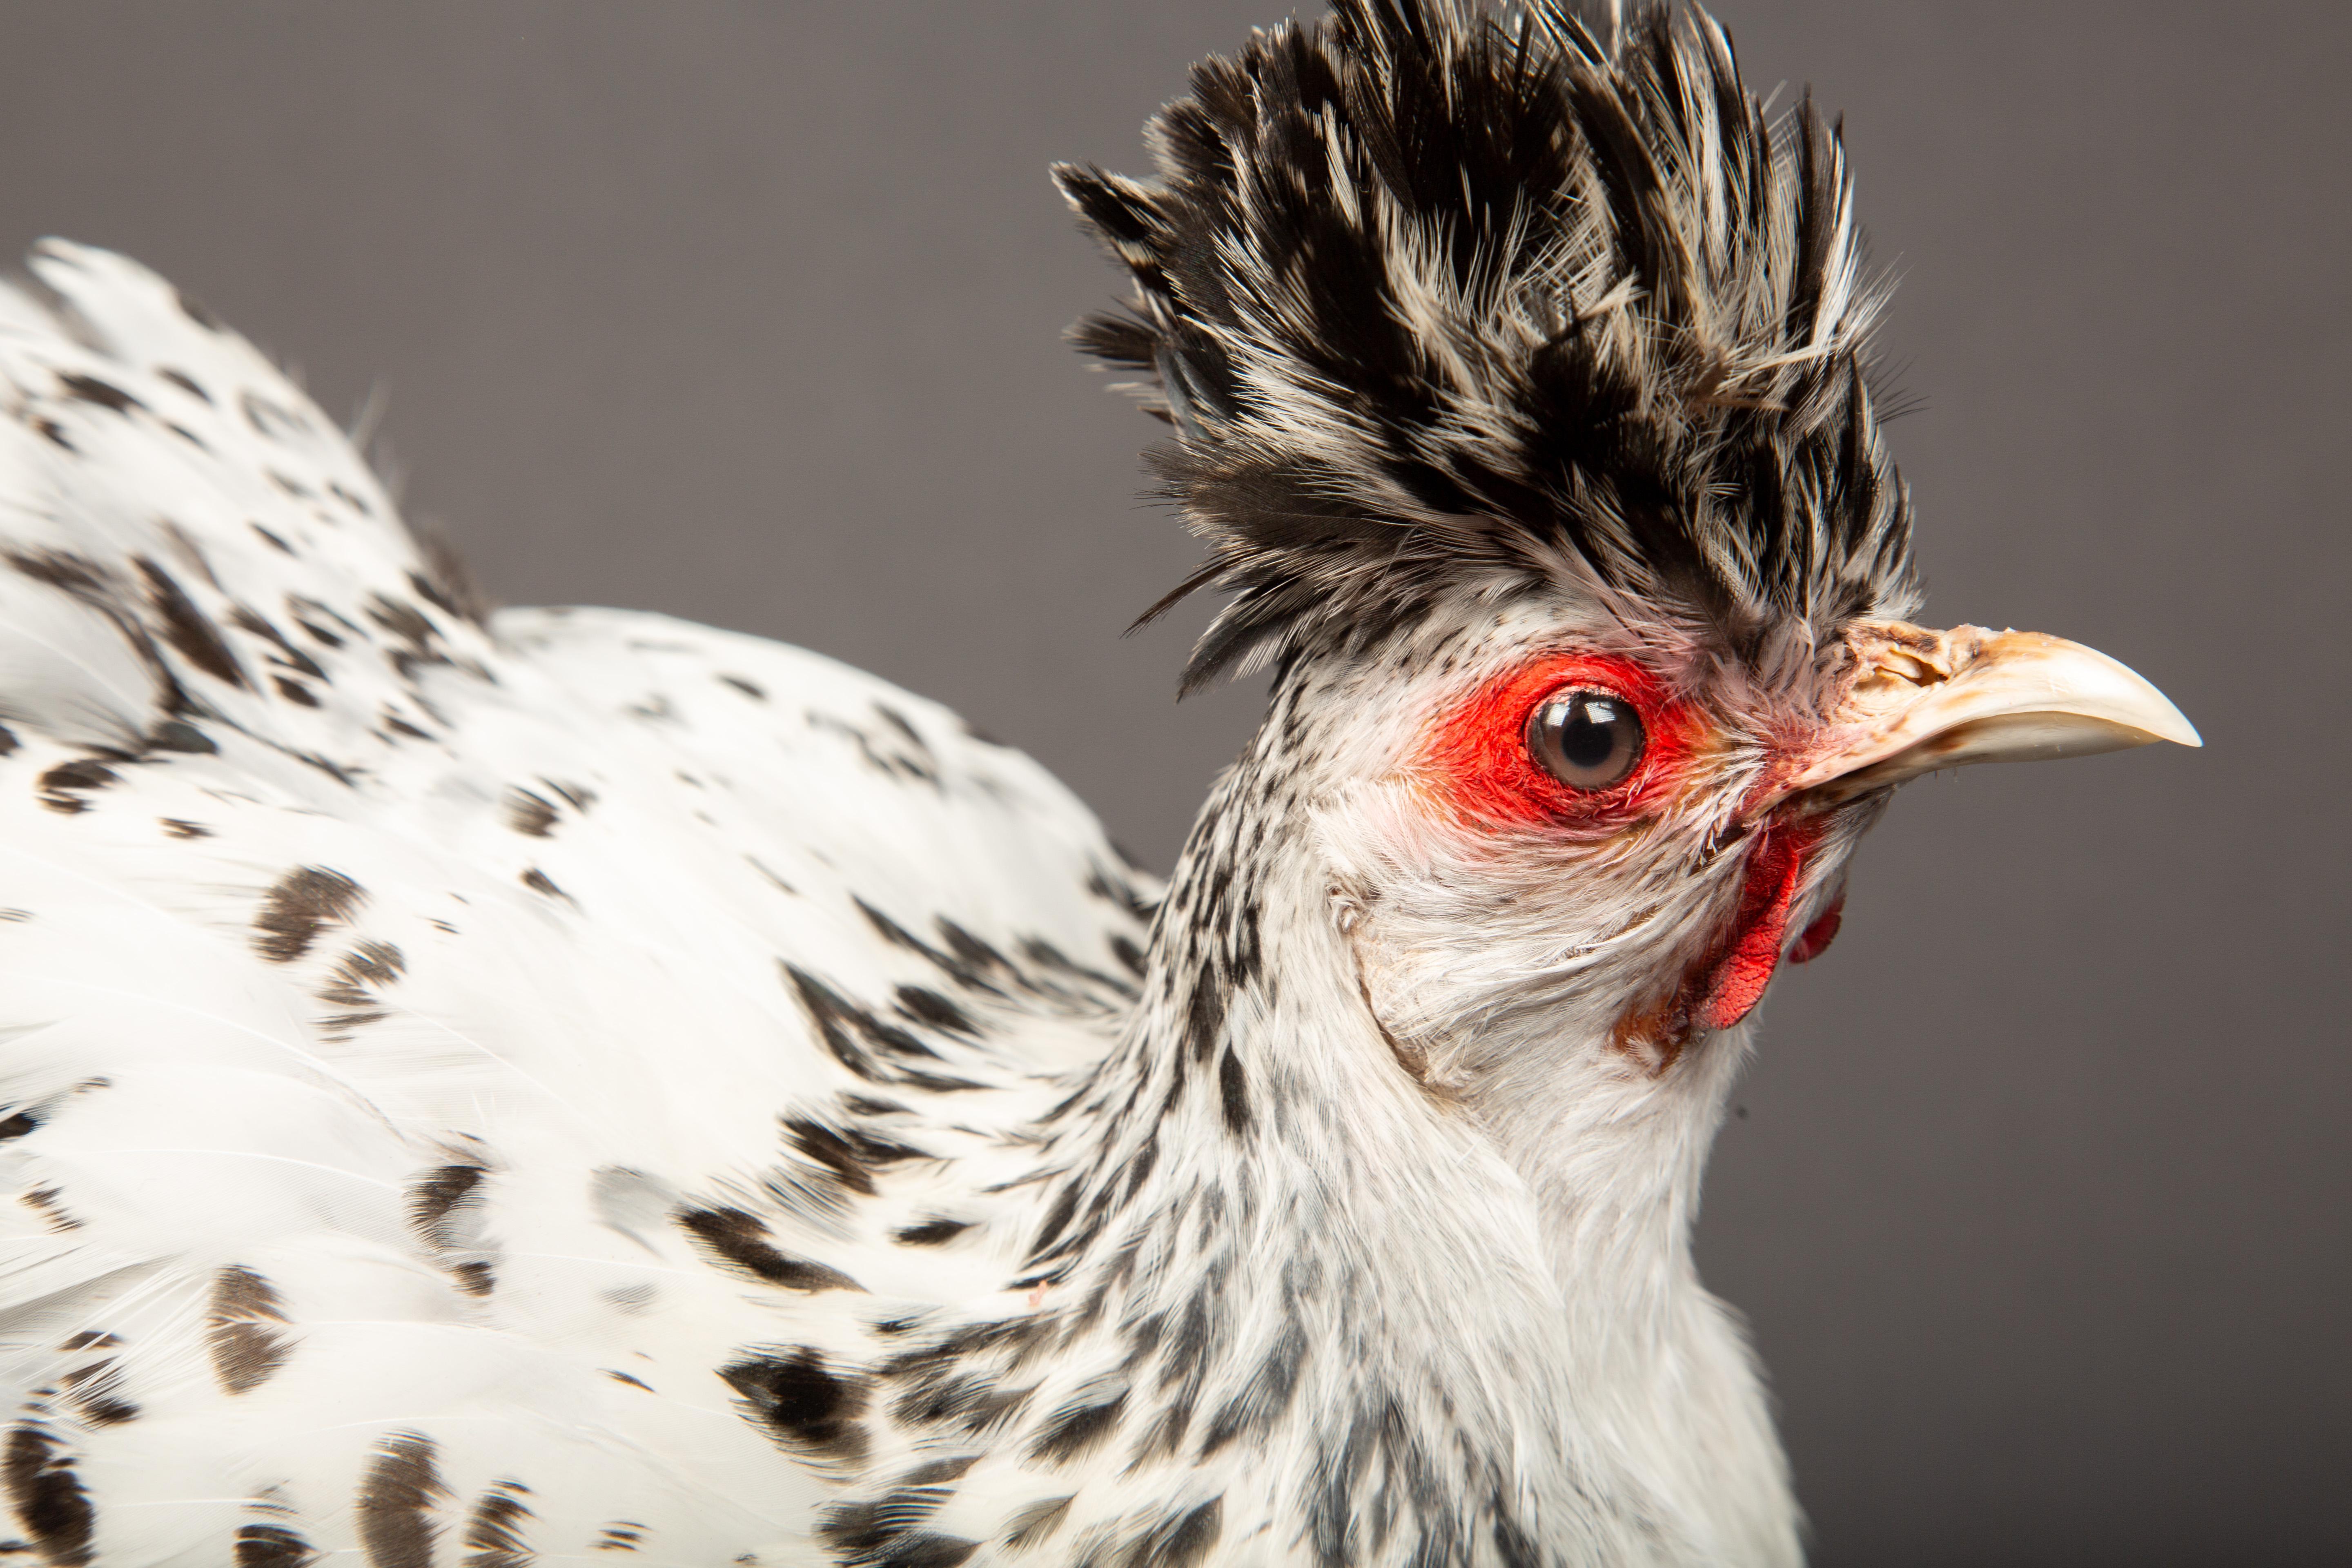 Victorian Taxidermy Black and White Appenzeller Spitzhauben Chicken